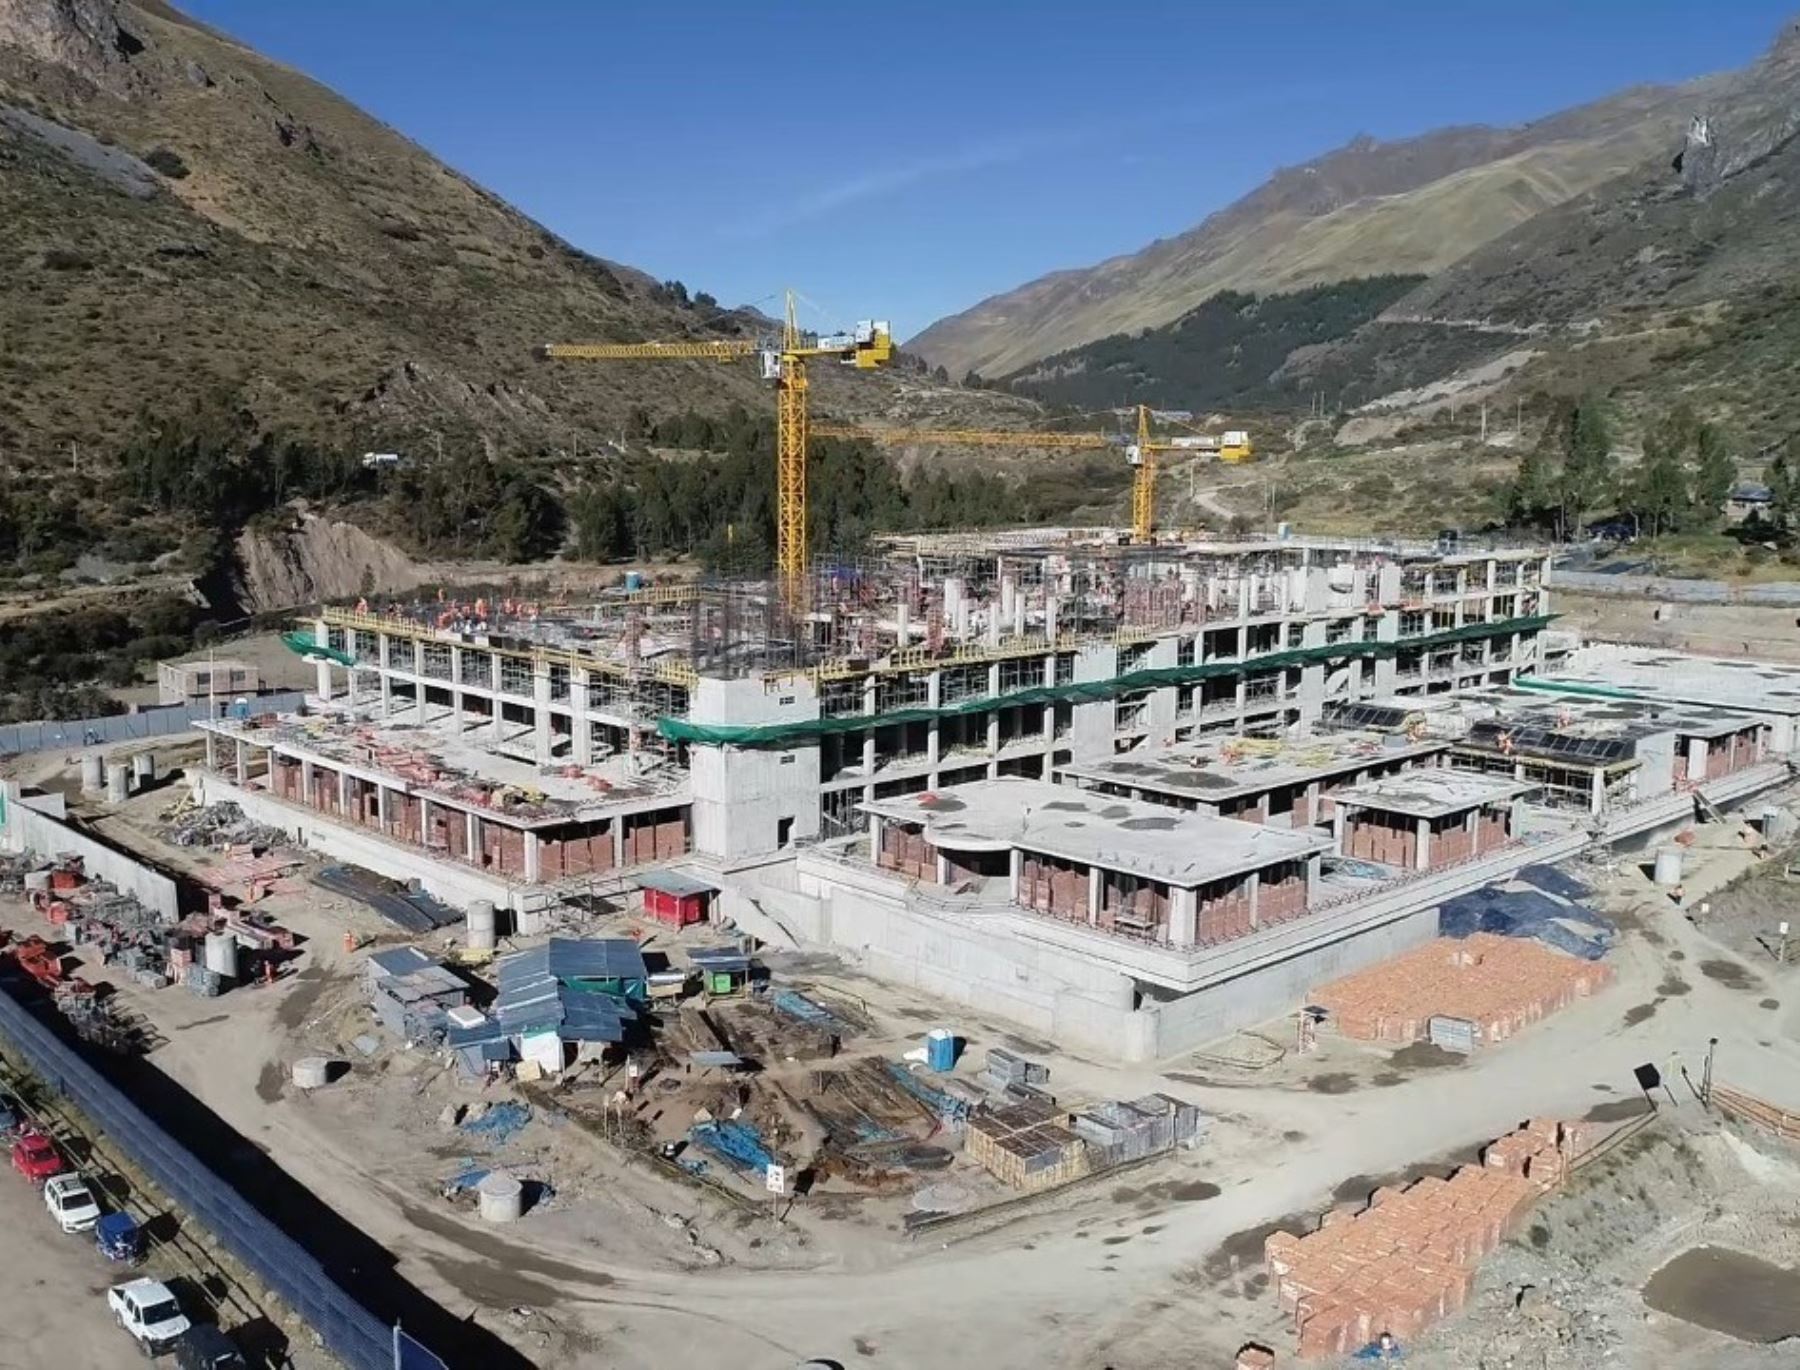 El Programa Nacional de Inversiones en Salud del Minsa destacó los avances en la construcción del futuro hospital regional de Huancavelica, que beneficiará a cerca de 500,000 pobladores. Foto: ANDINA/difusión.